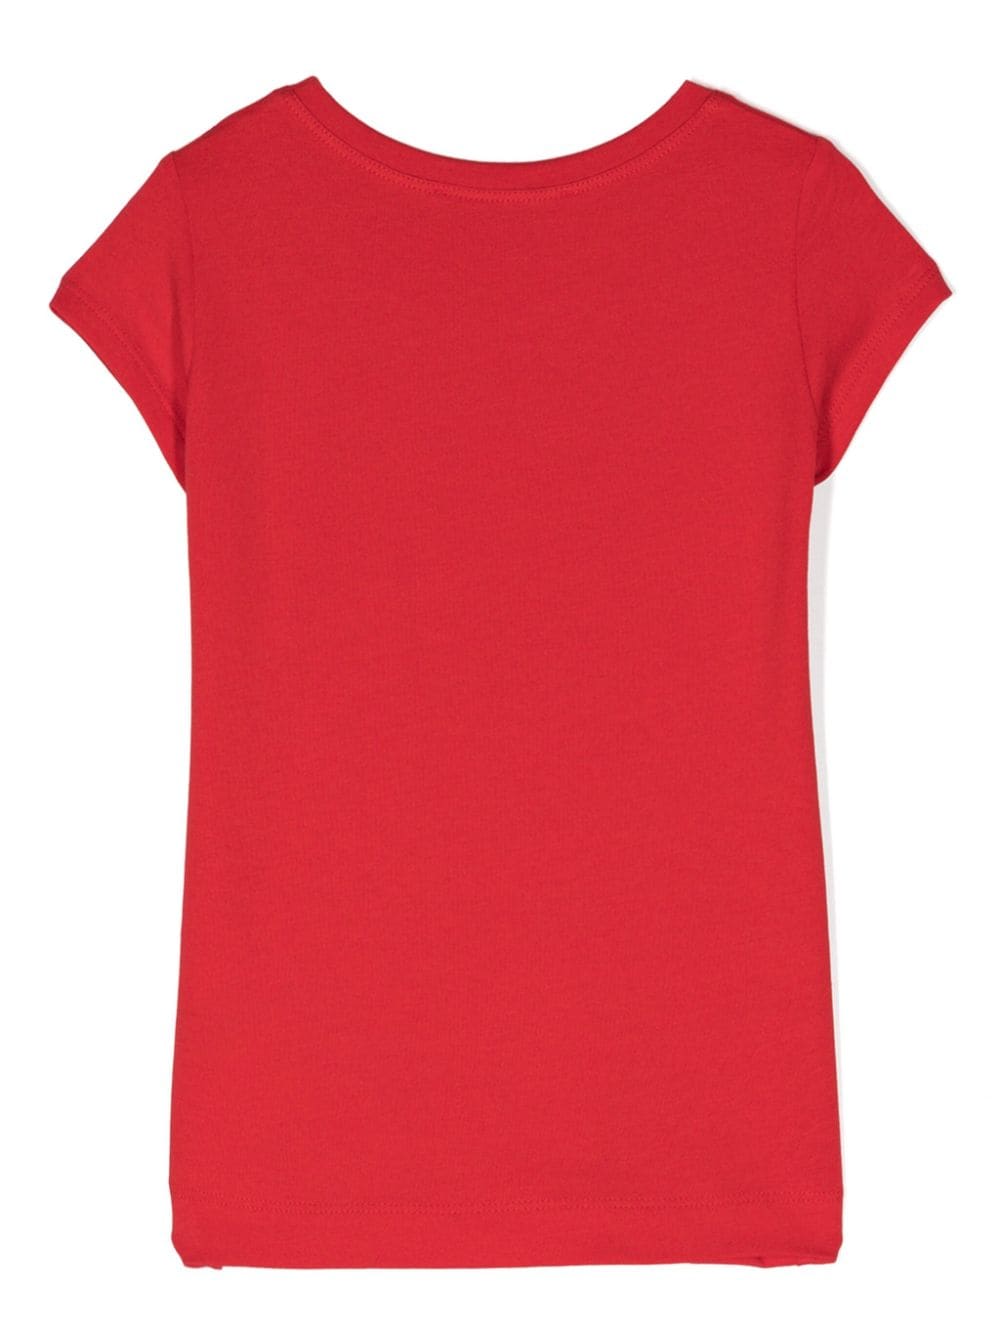 T-shirt rossa per bambina con stampa